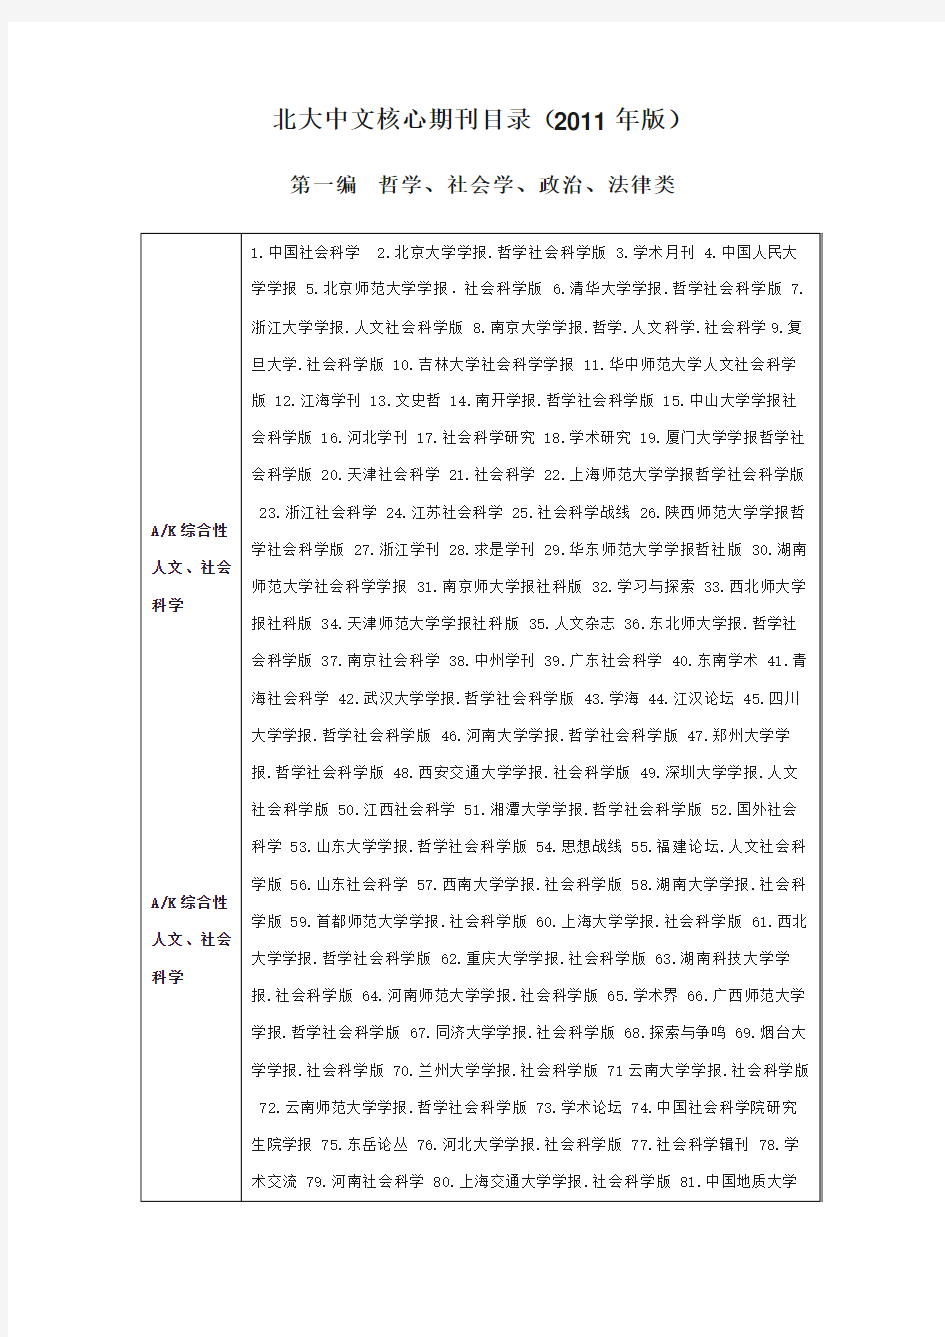 北大中文核心期刊目录(2012版)--2013年4月12日更新